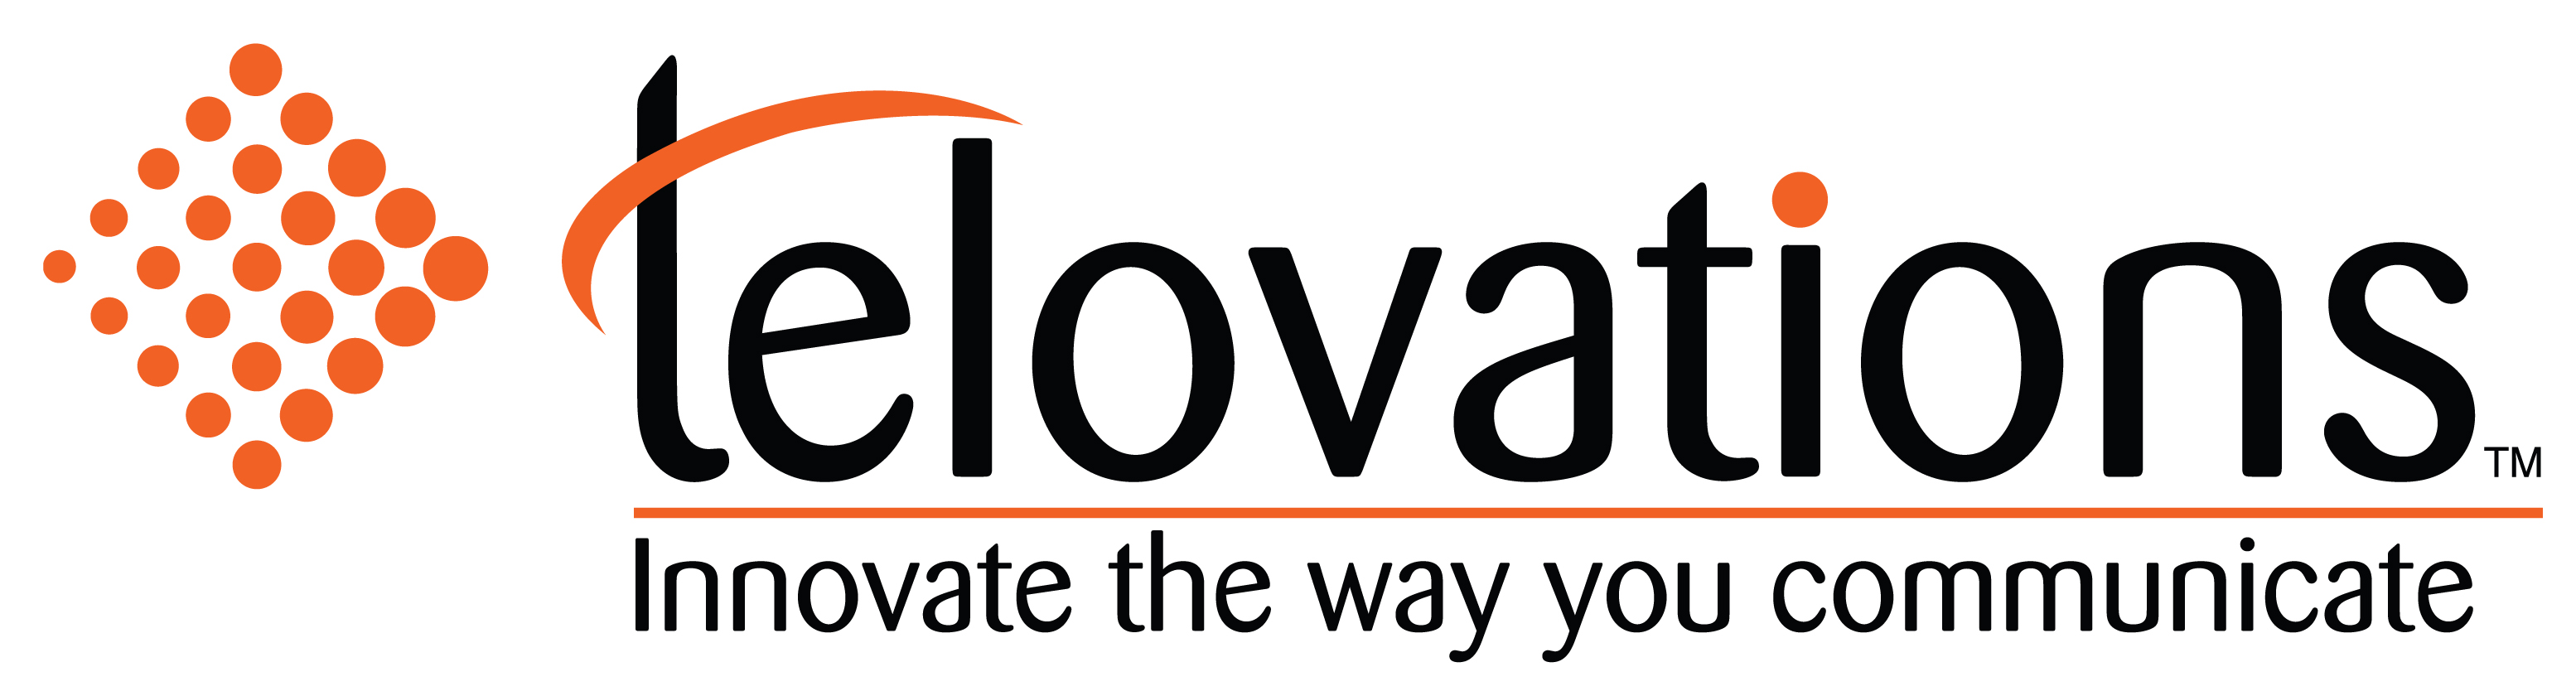 Telovations logo